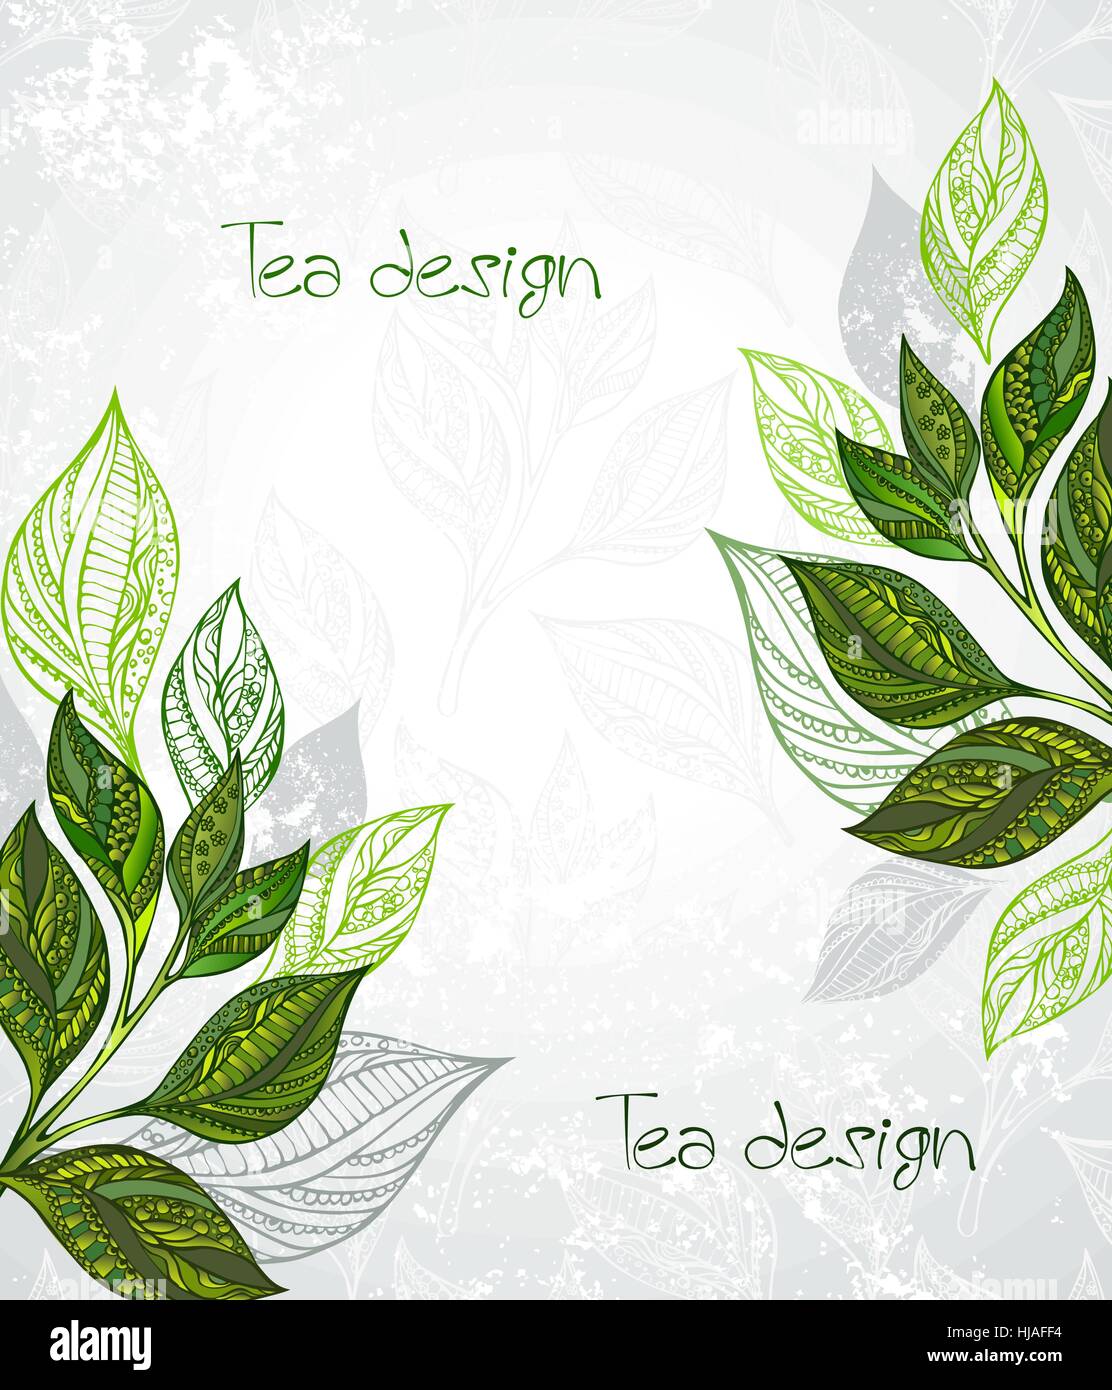 Design mit gemusterten, grüne und graue Blätter Tee auf einem grauen Hintergrund Textur. Tee-Design. Stock Vektor